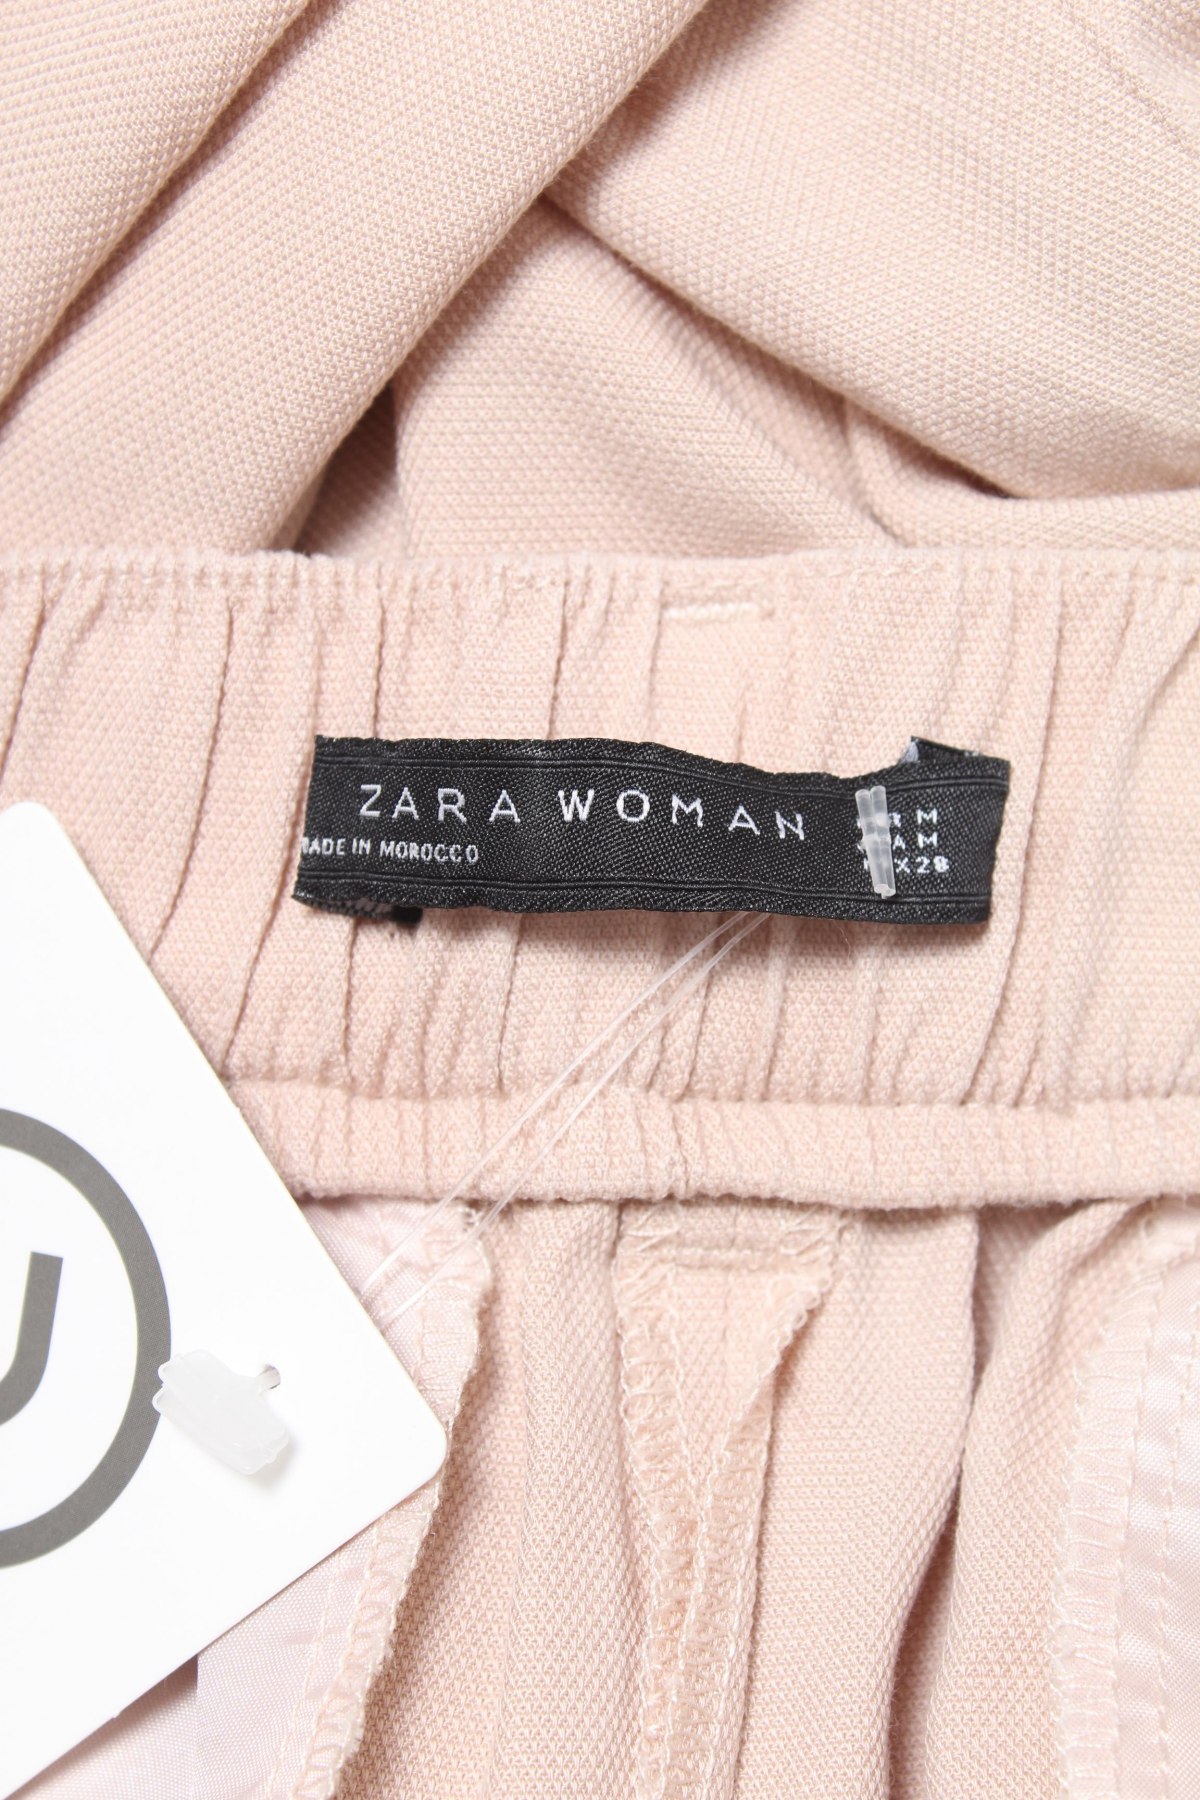 revenge Cook Our company Γυναικείο παντελόνι Zara - αγοράστε σε τιμή που συμφέρει στο Remix -  #105275795